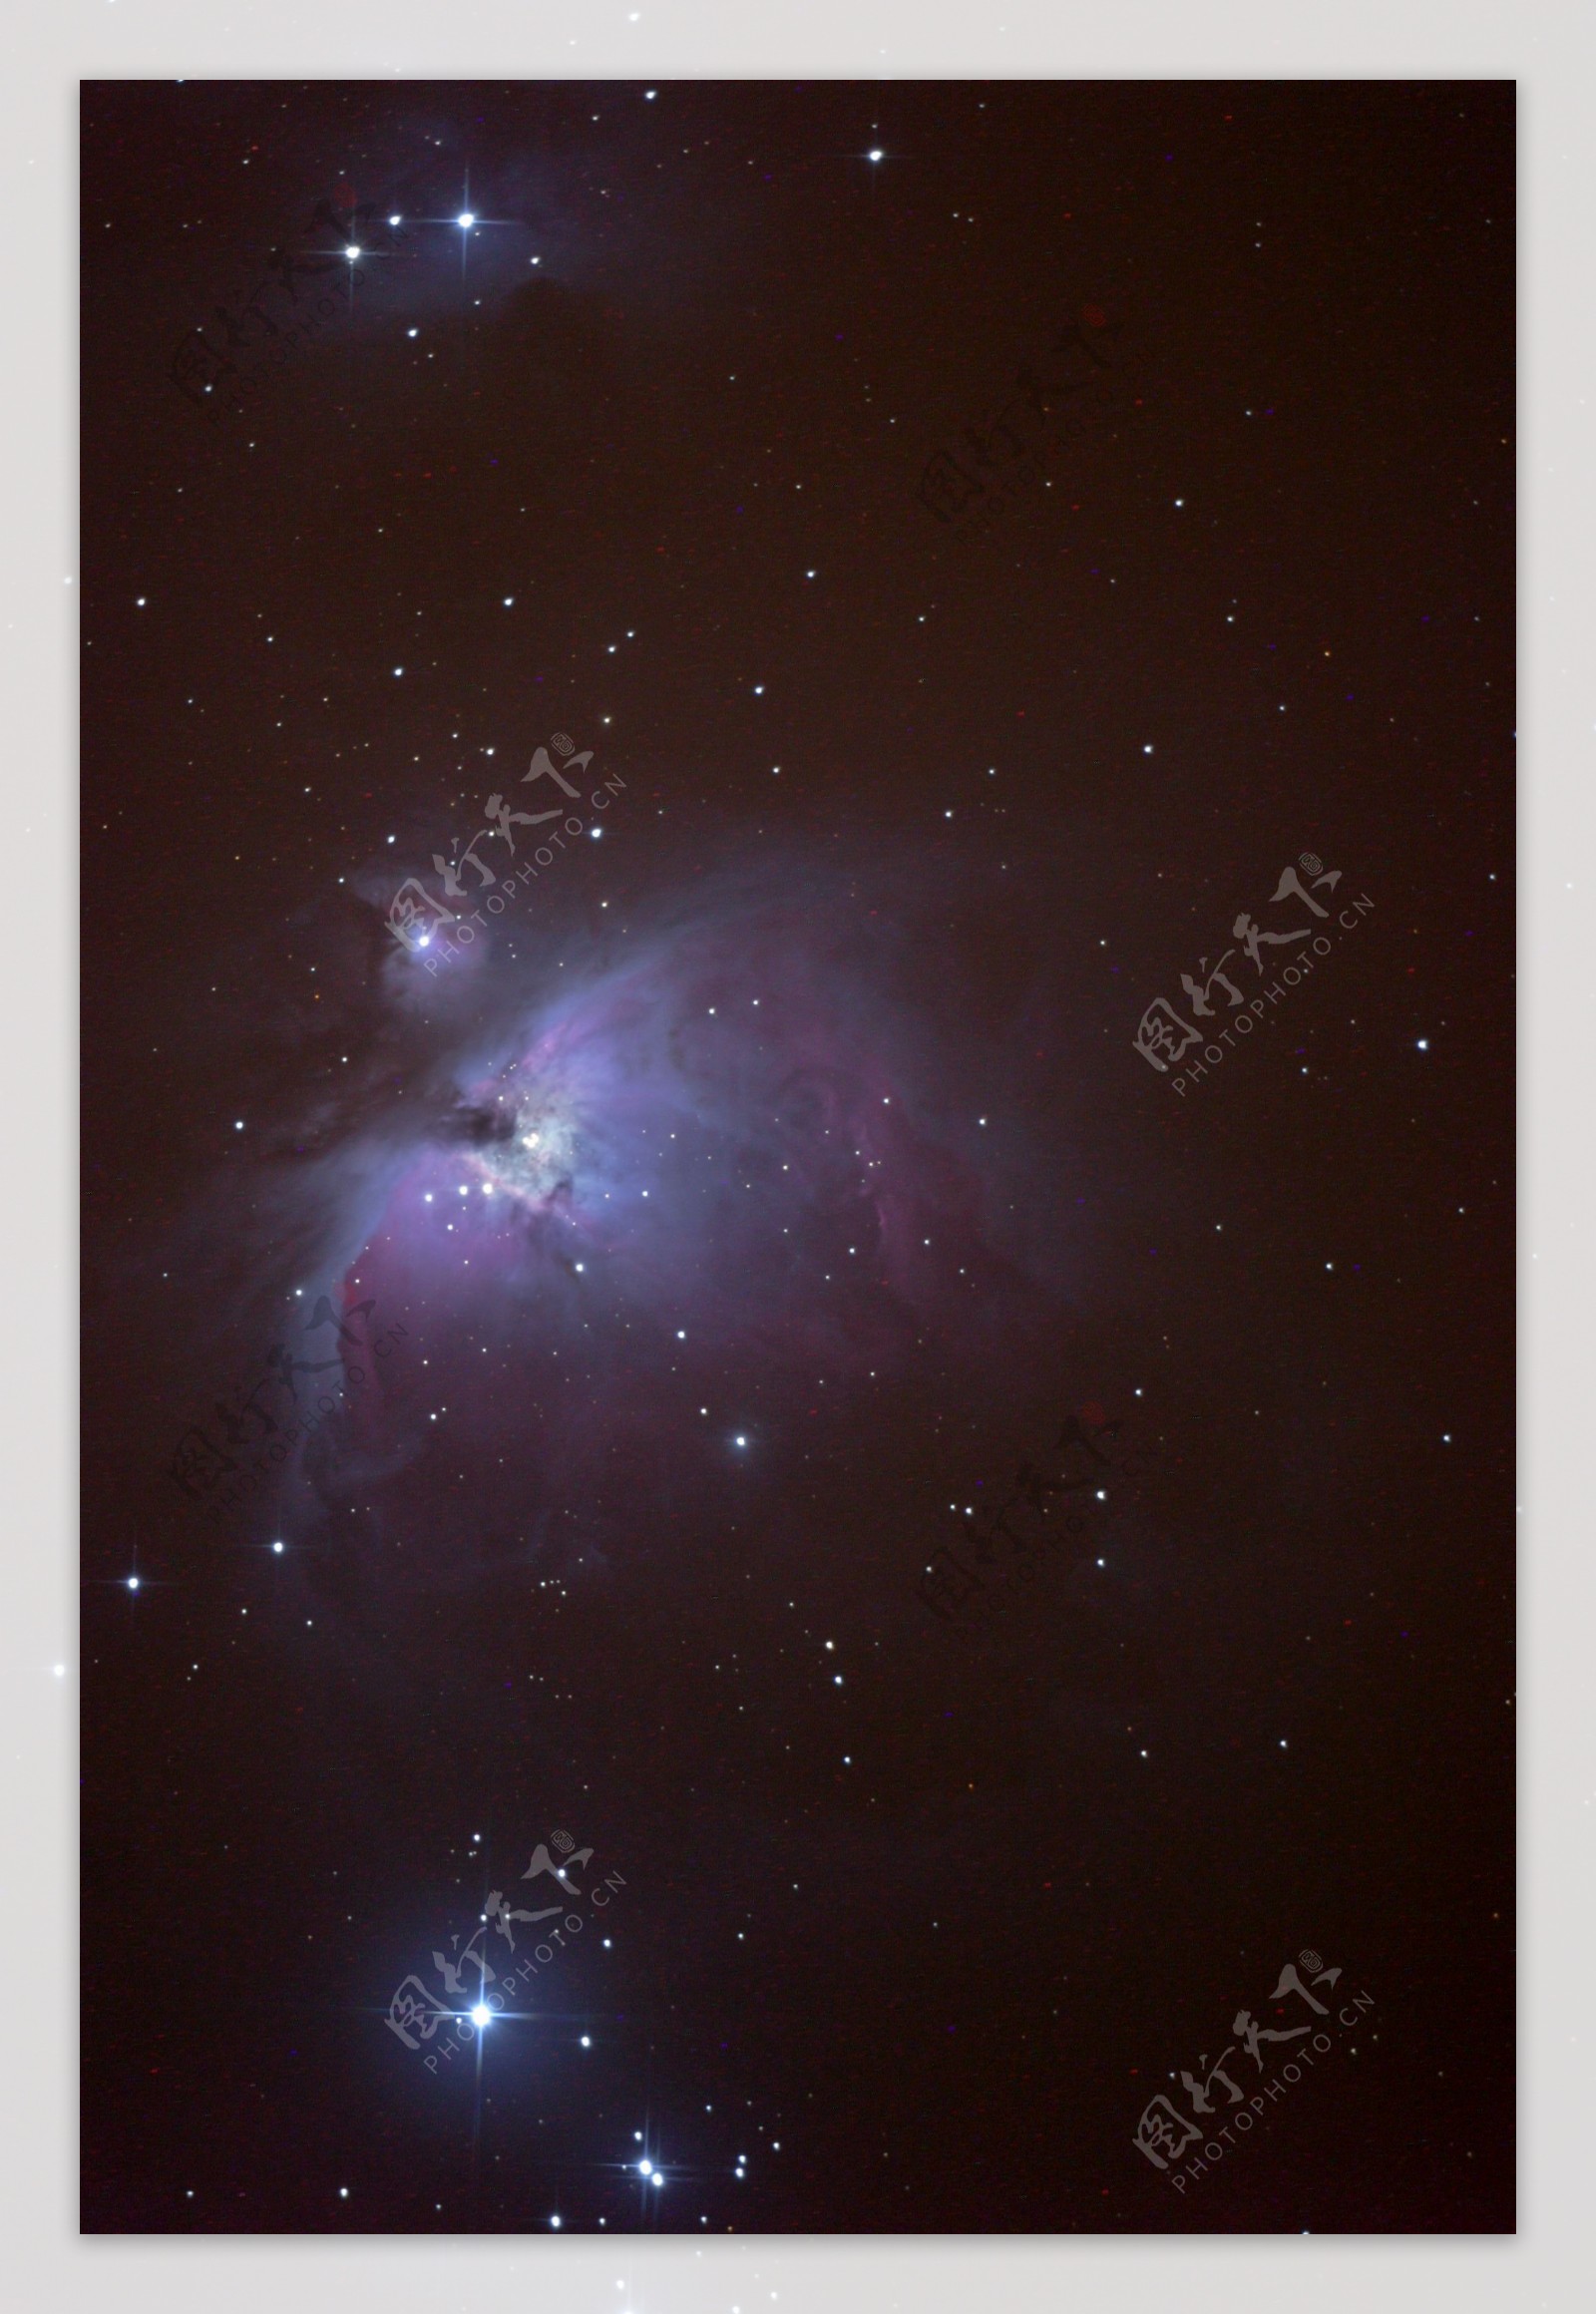 M42猎户座星云